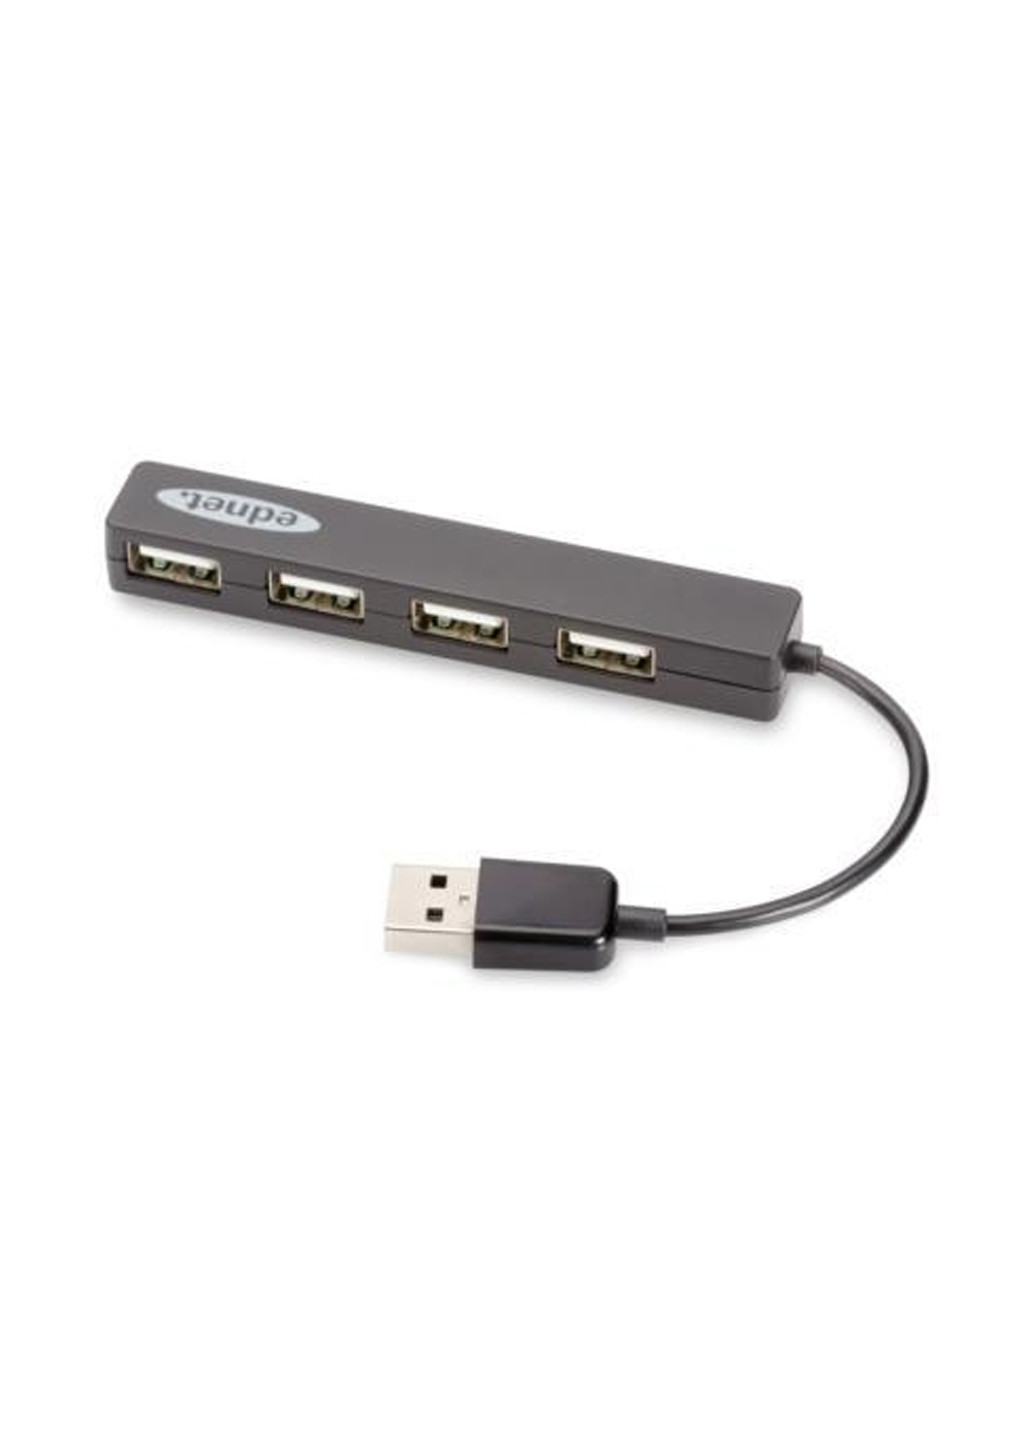 Концентратор Digitus EDNET USB 2.0, 4 раз"єми, черный (85040) чёрный